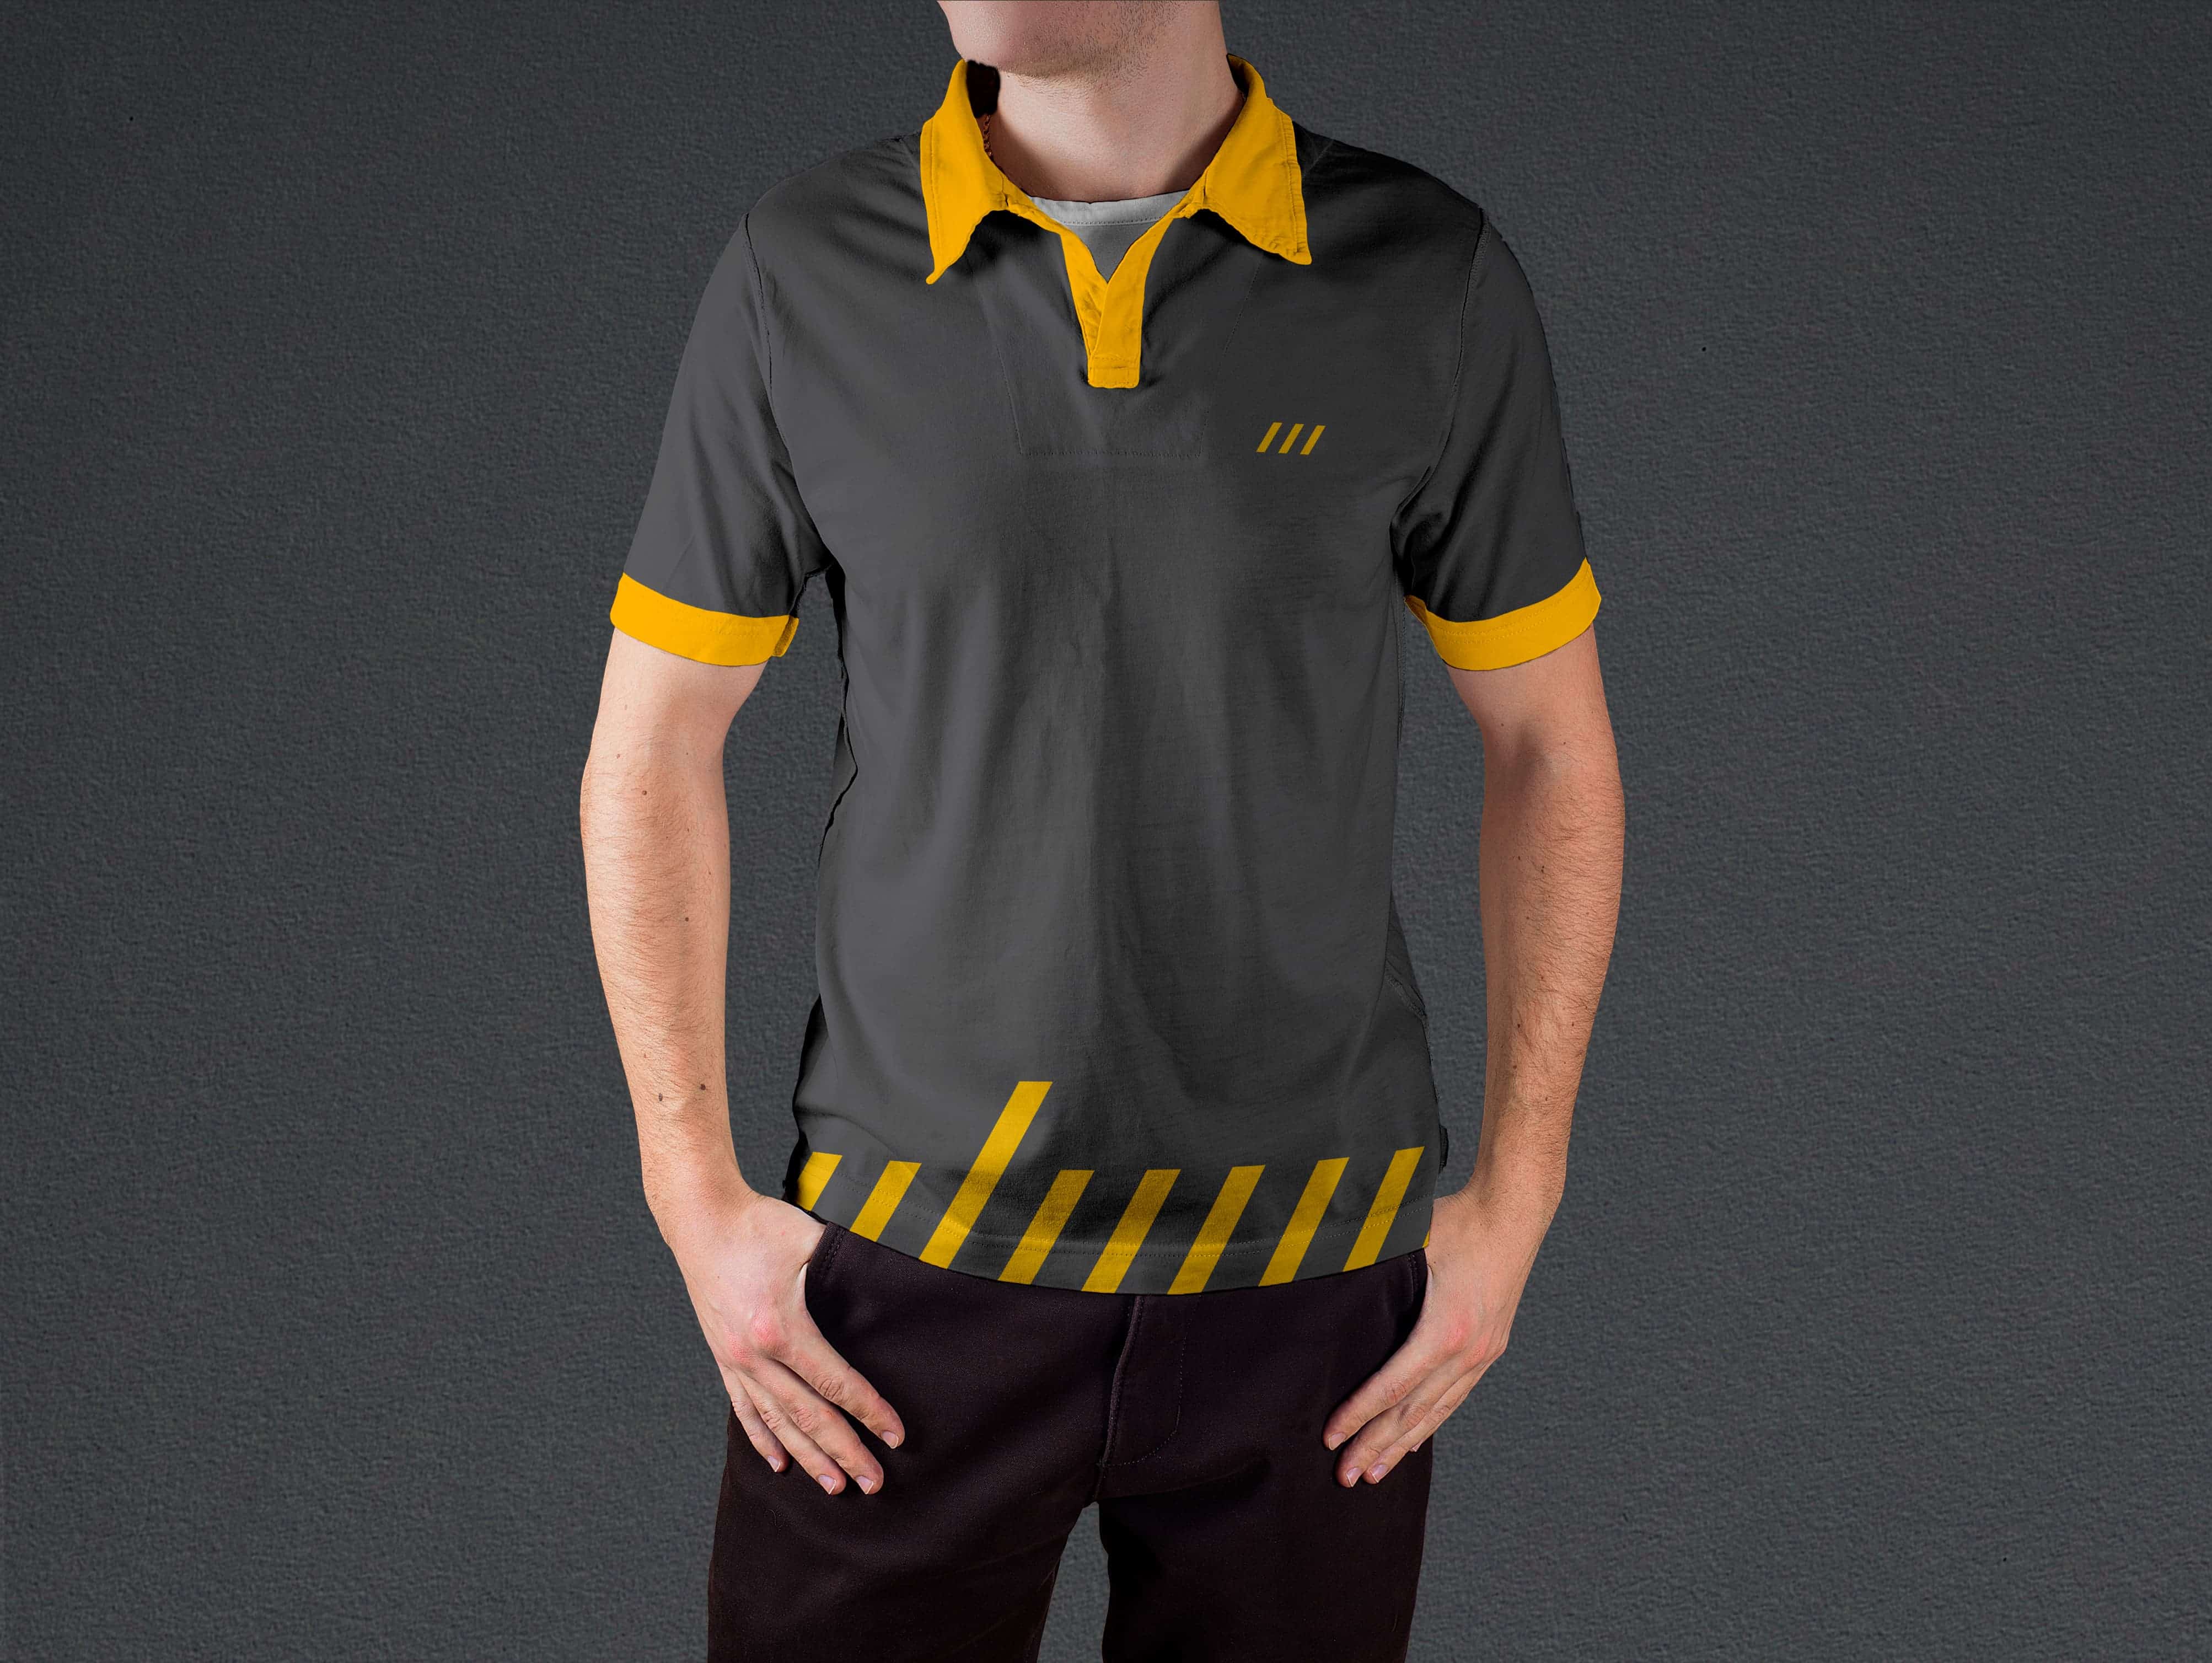 Брендированная серая футболка с жёлтым воротником, манжетами и низом.